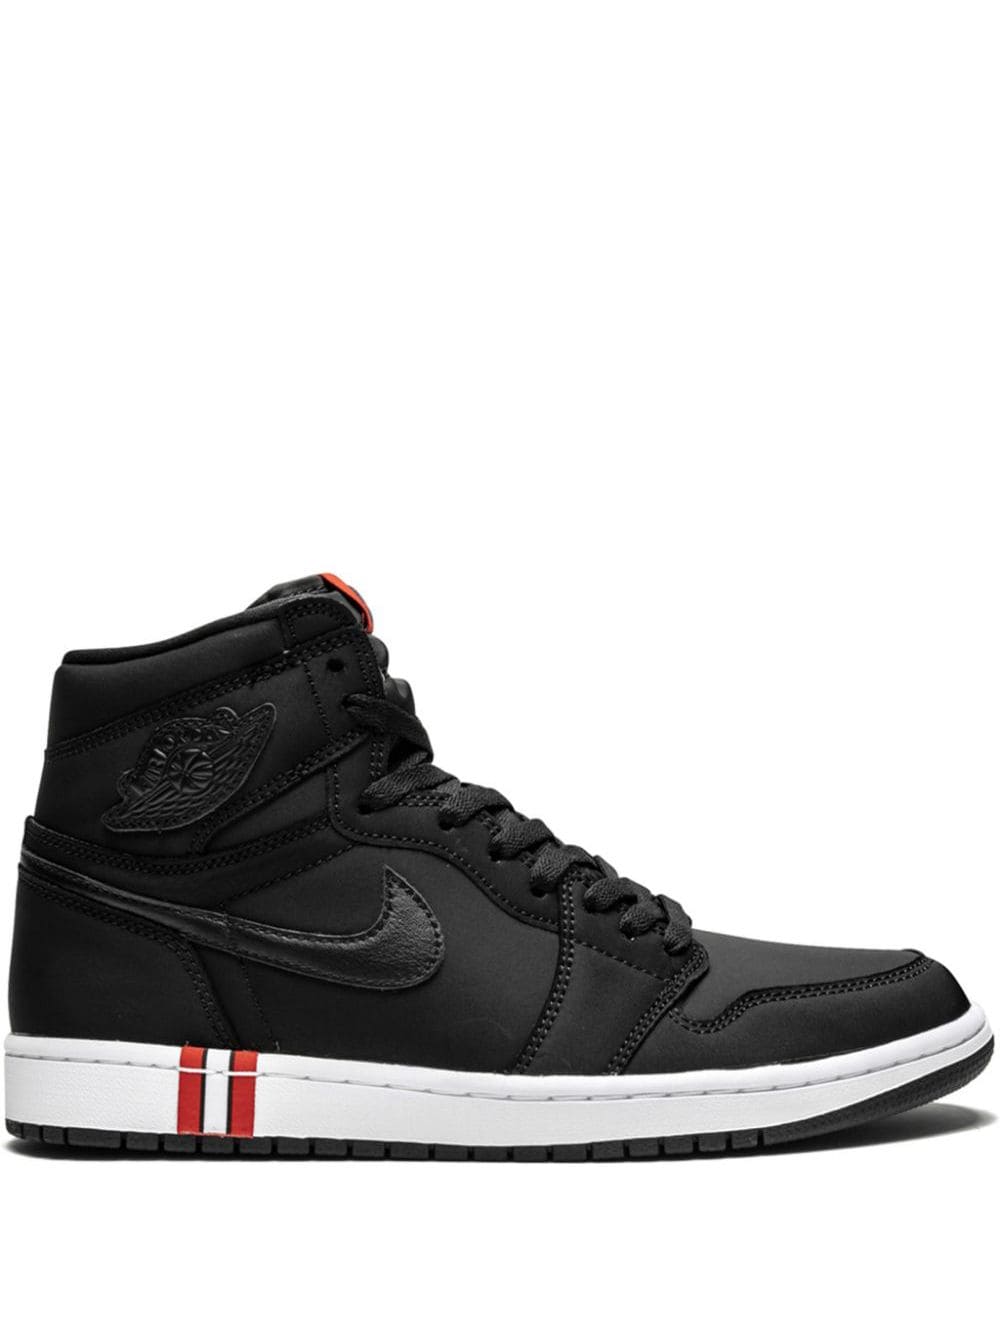 Jordan x PSG Air Jordan 1 Retro High OG sneakers - Black von Jordan